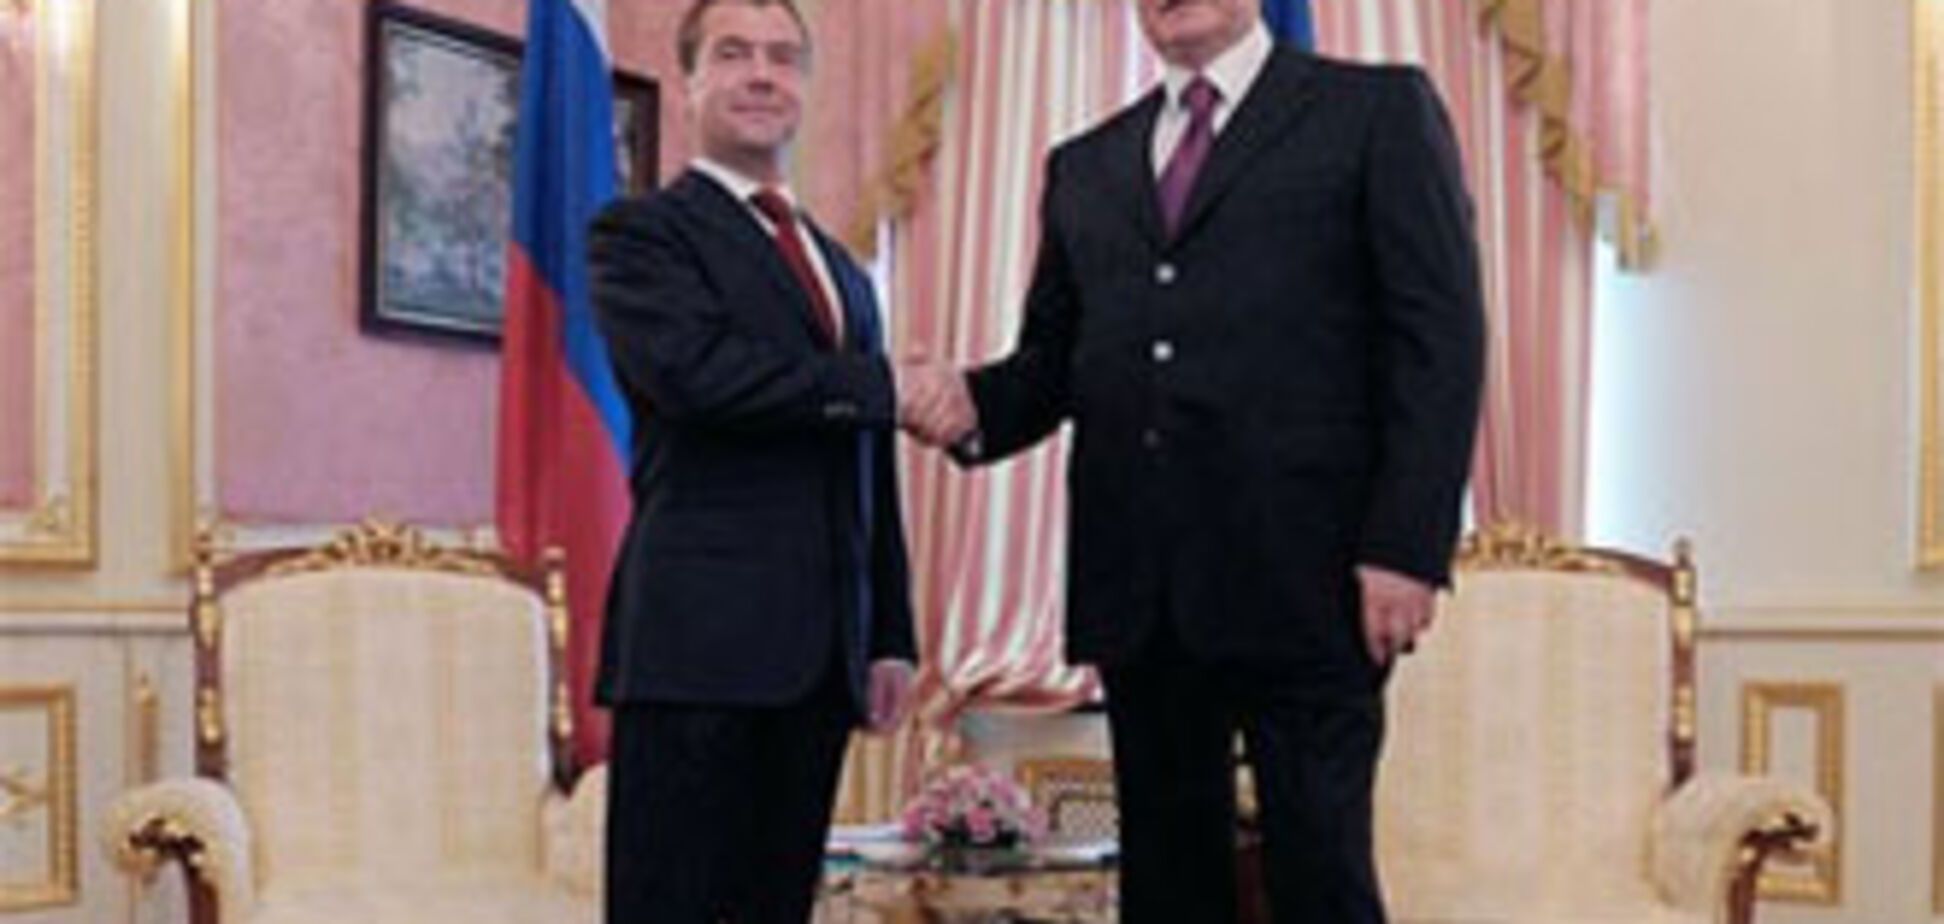 Медведев приедет к Януковичу